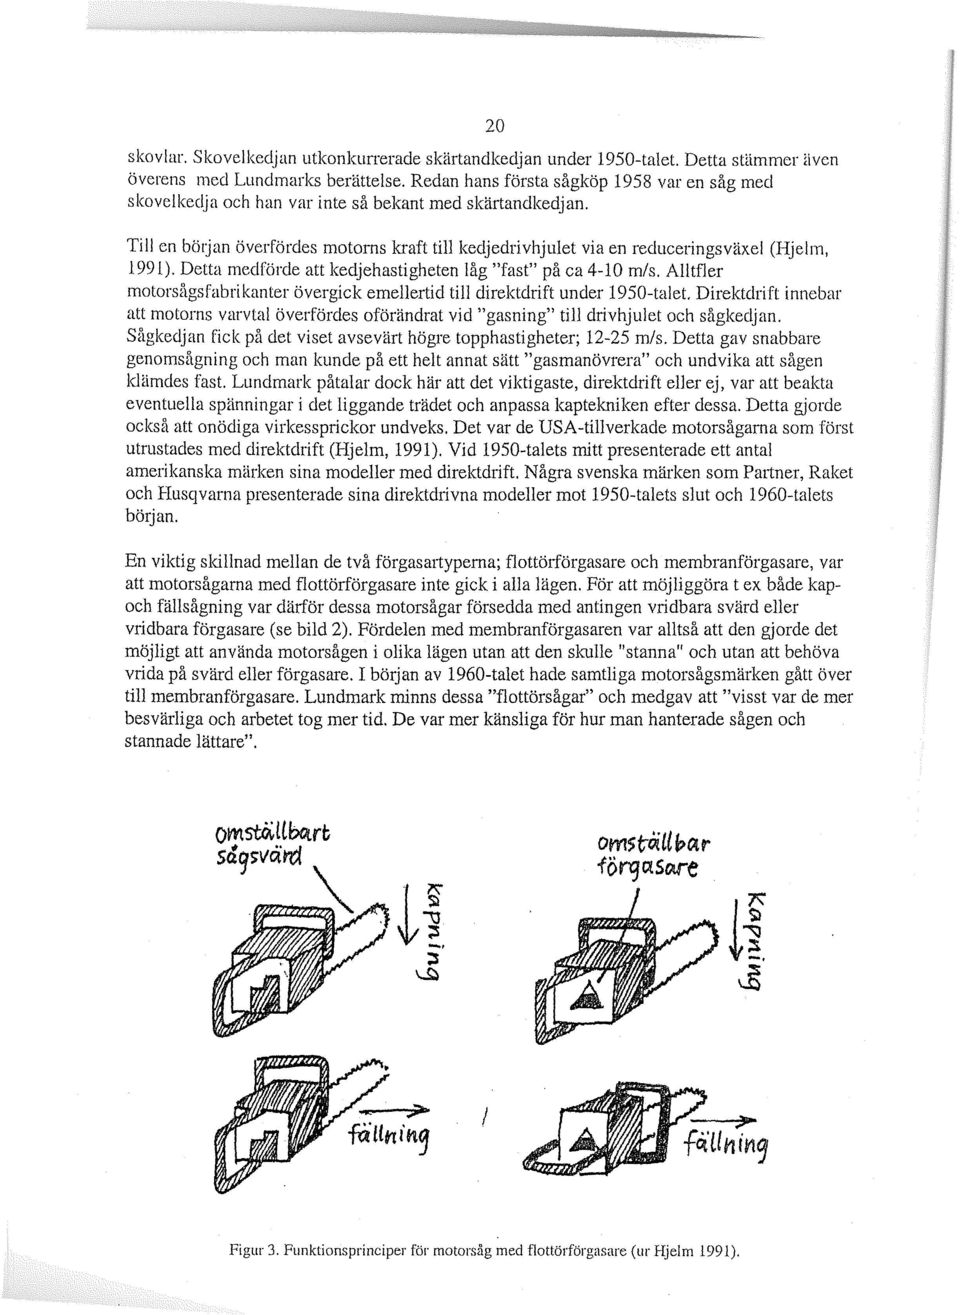 20 Till en böljan överfördes motorns kraft till kedjedrivhjulet via en reducelingsväxel (Hjelm, 1991). Detta medförde att kedjehastigheten låg "fast" på ca 4-10 m/s.